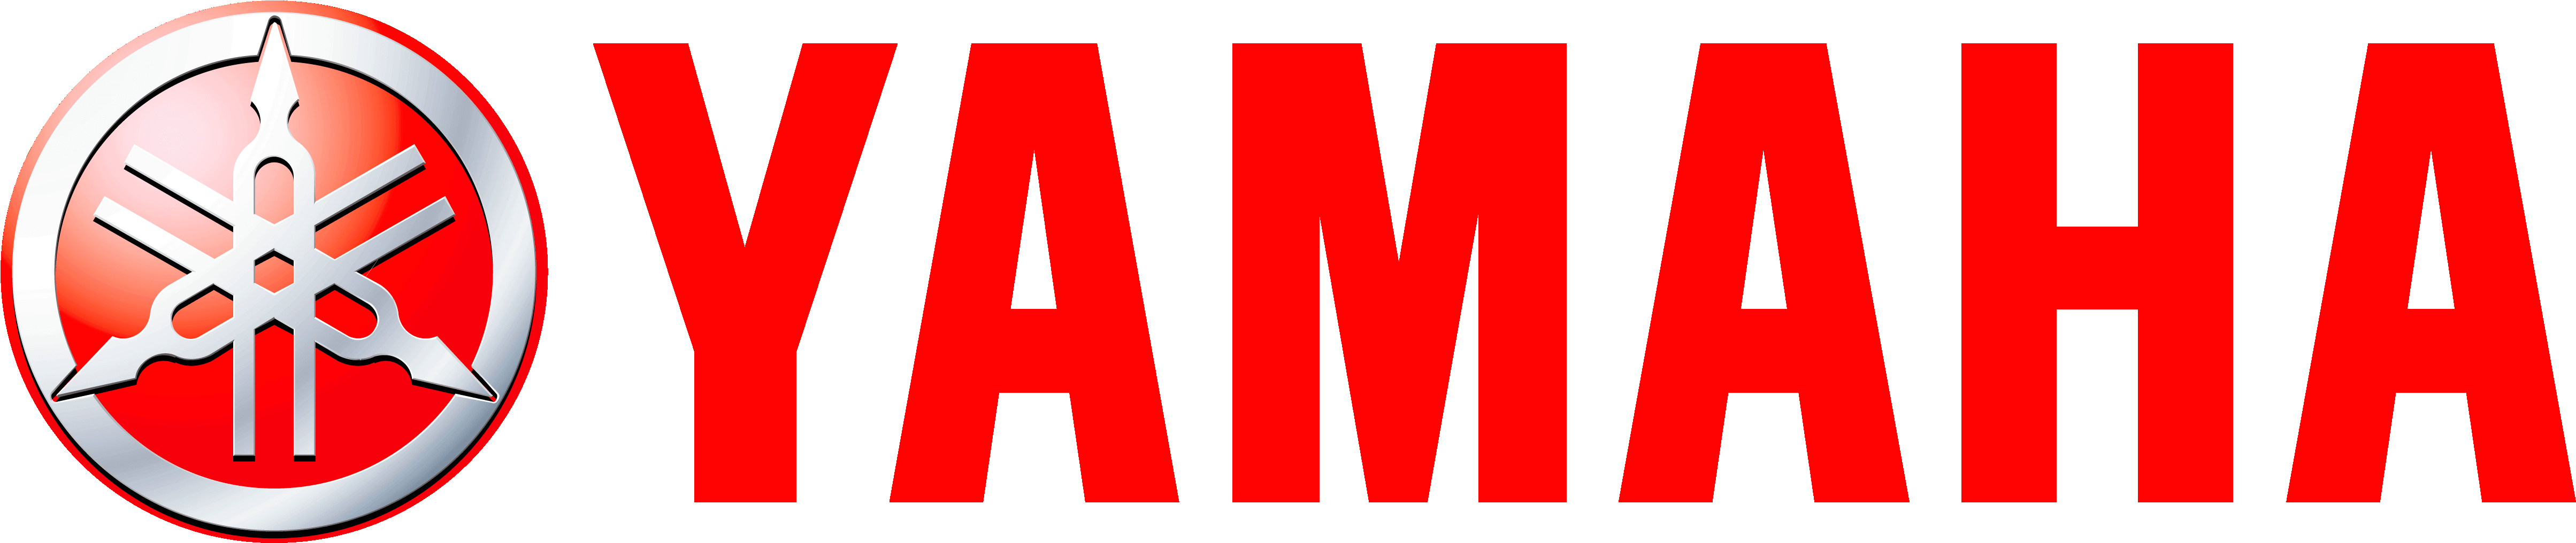 Yamaha Logo Redand Silver